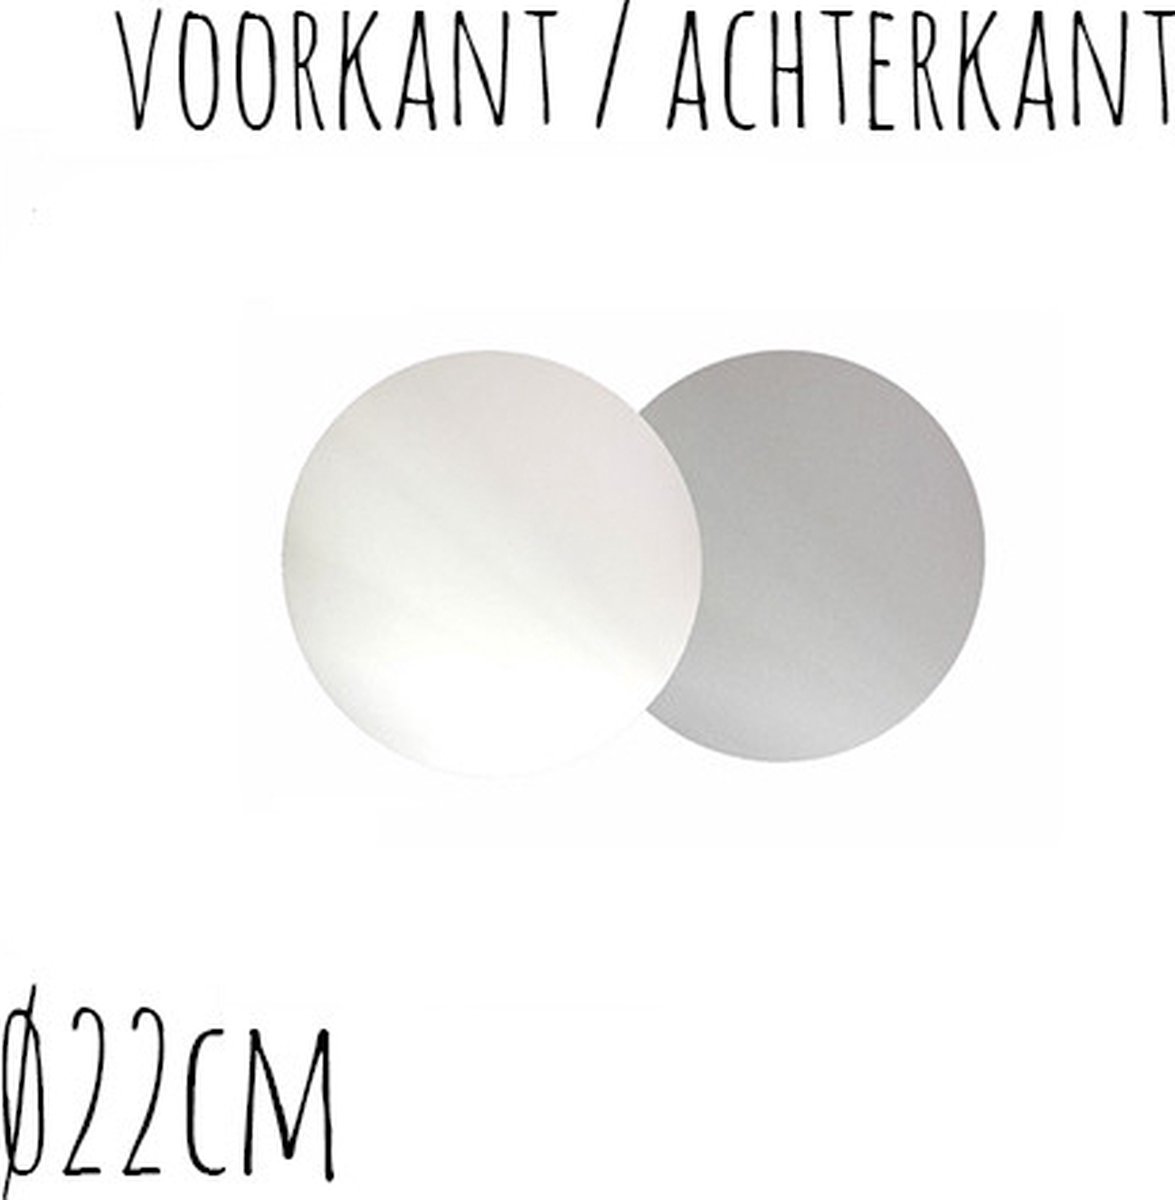 25 stuks - Taartonderzetter Wit / Zilver Ø22cm